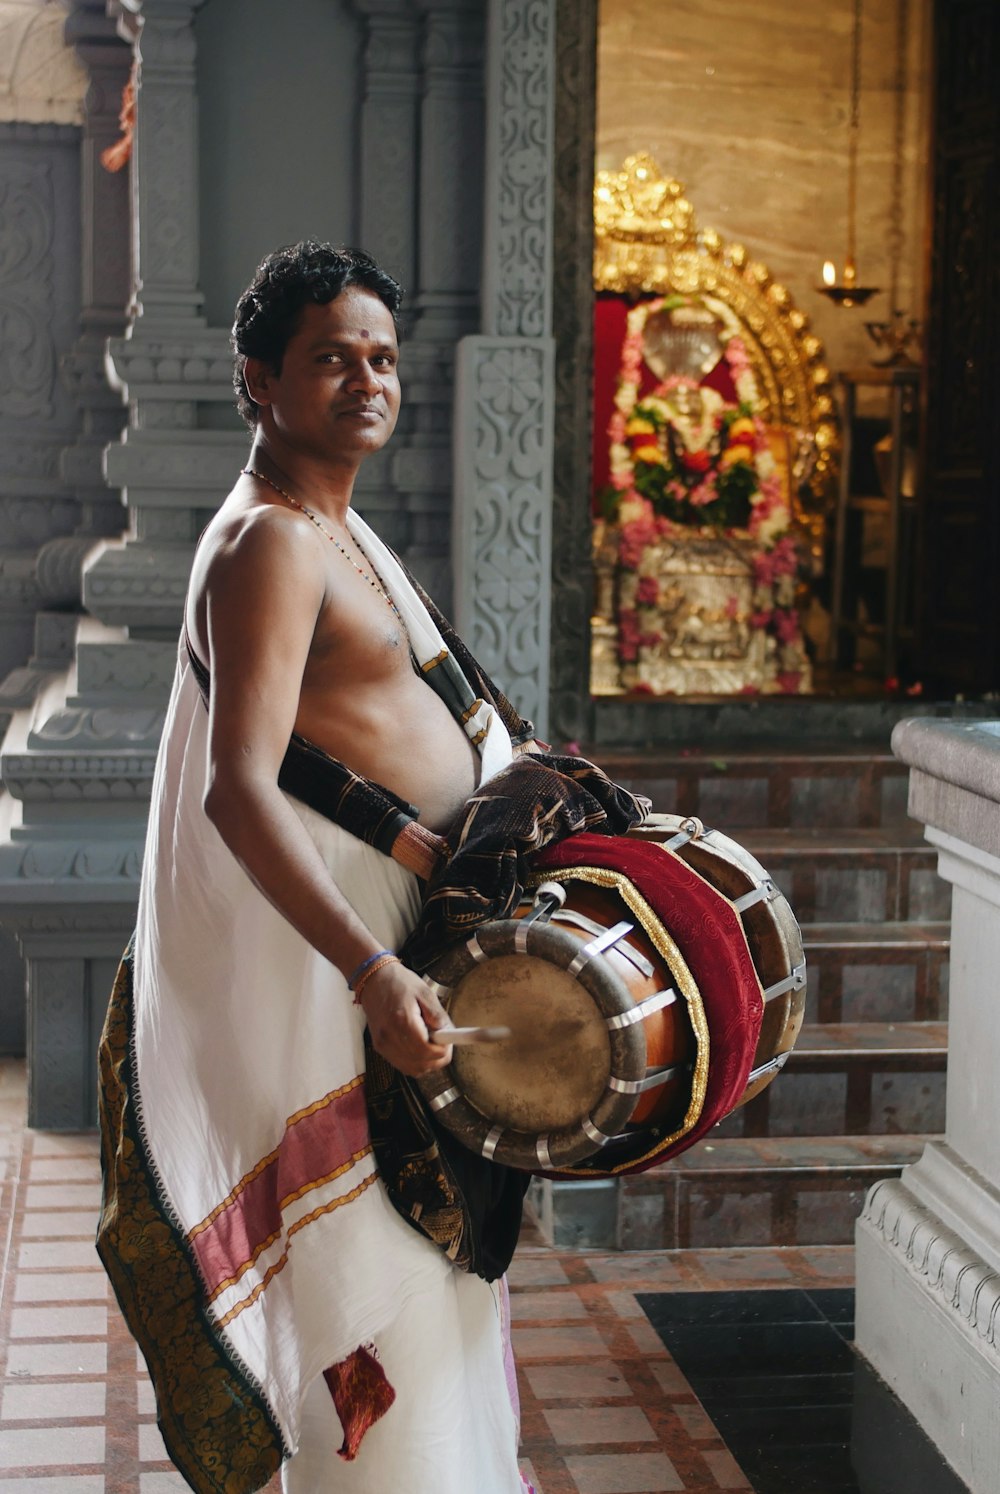 man wearing white dress holding musical drum